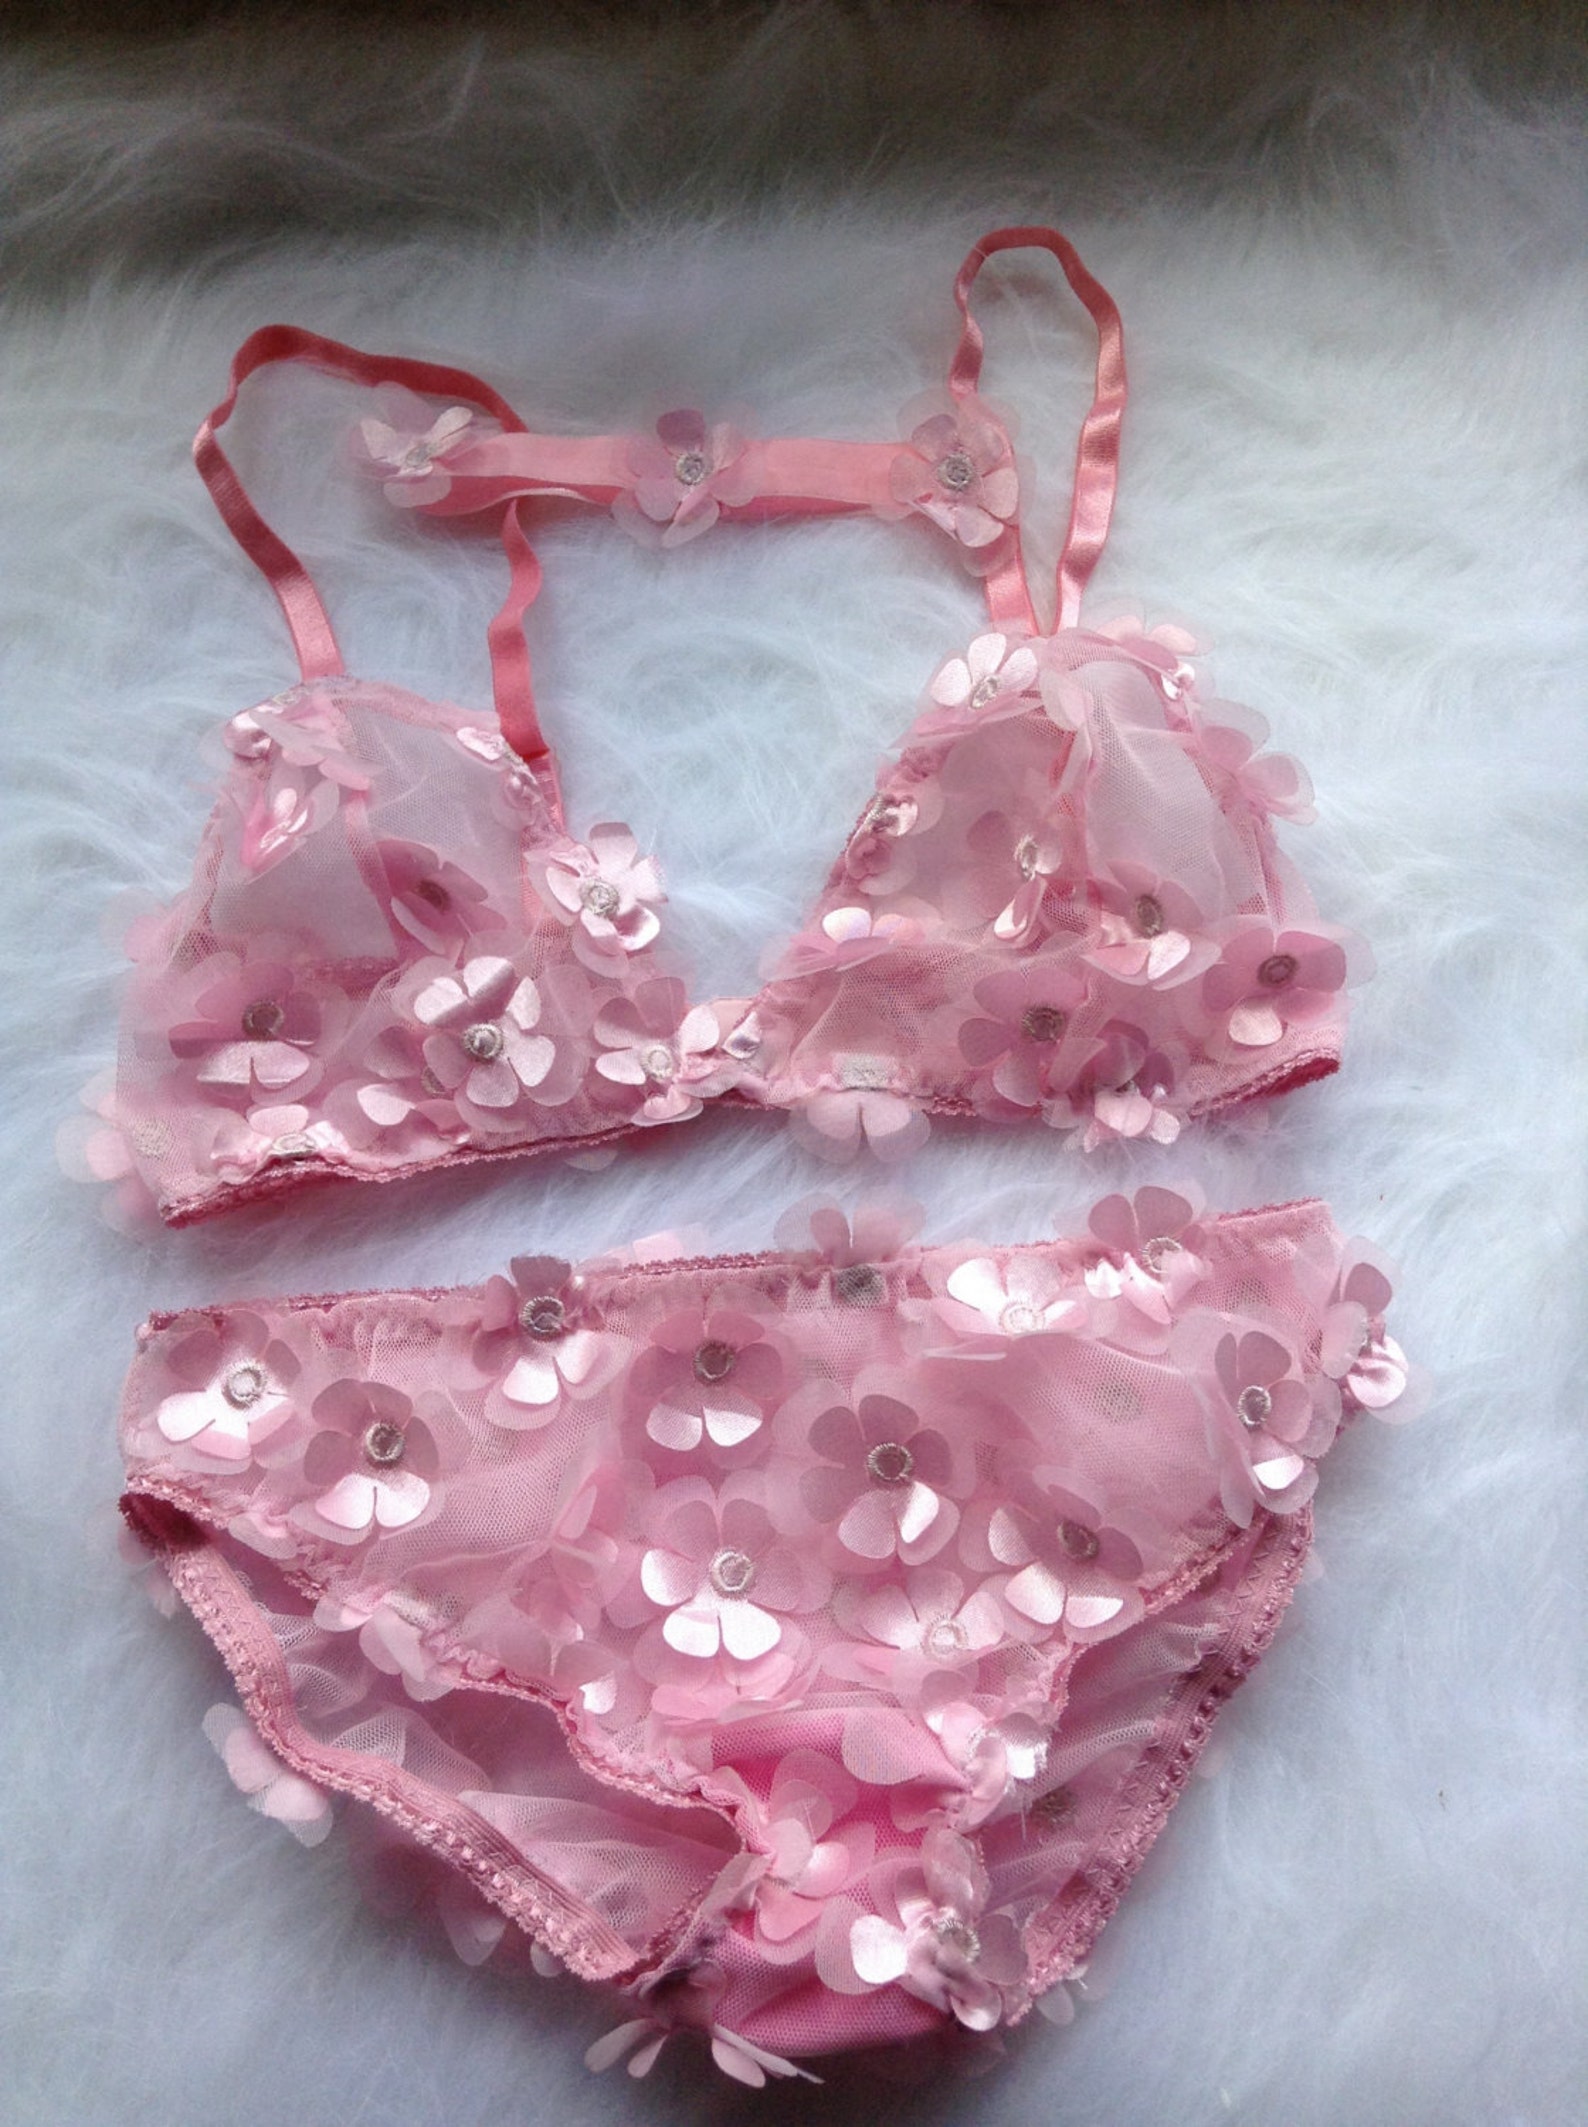 Комплект розового белья. Rose Sakura белье. Mon lingerie.